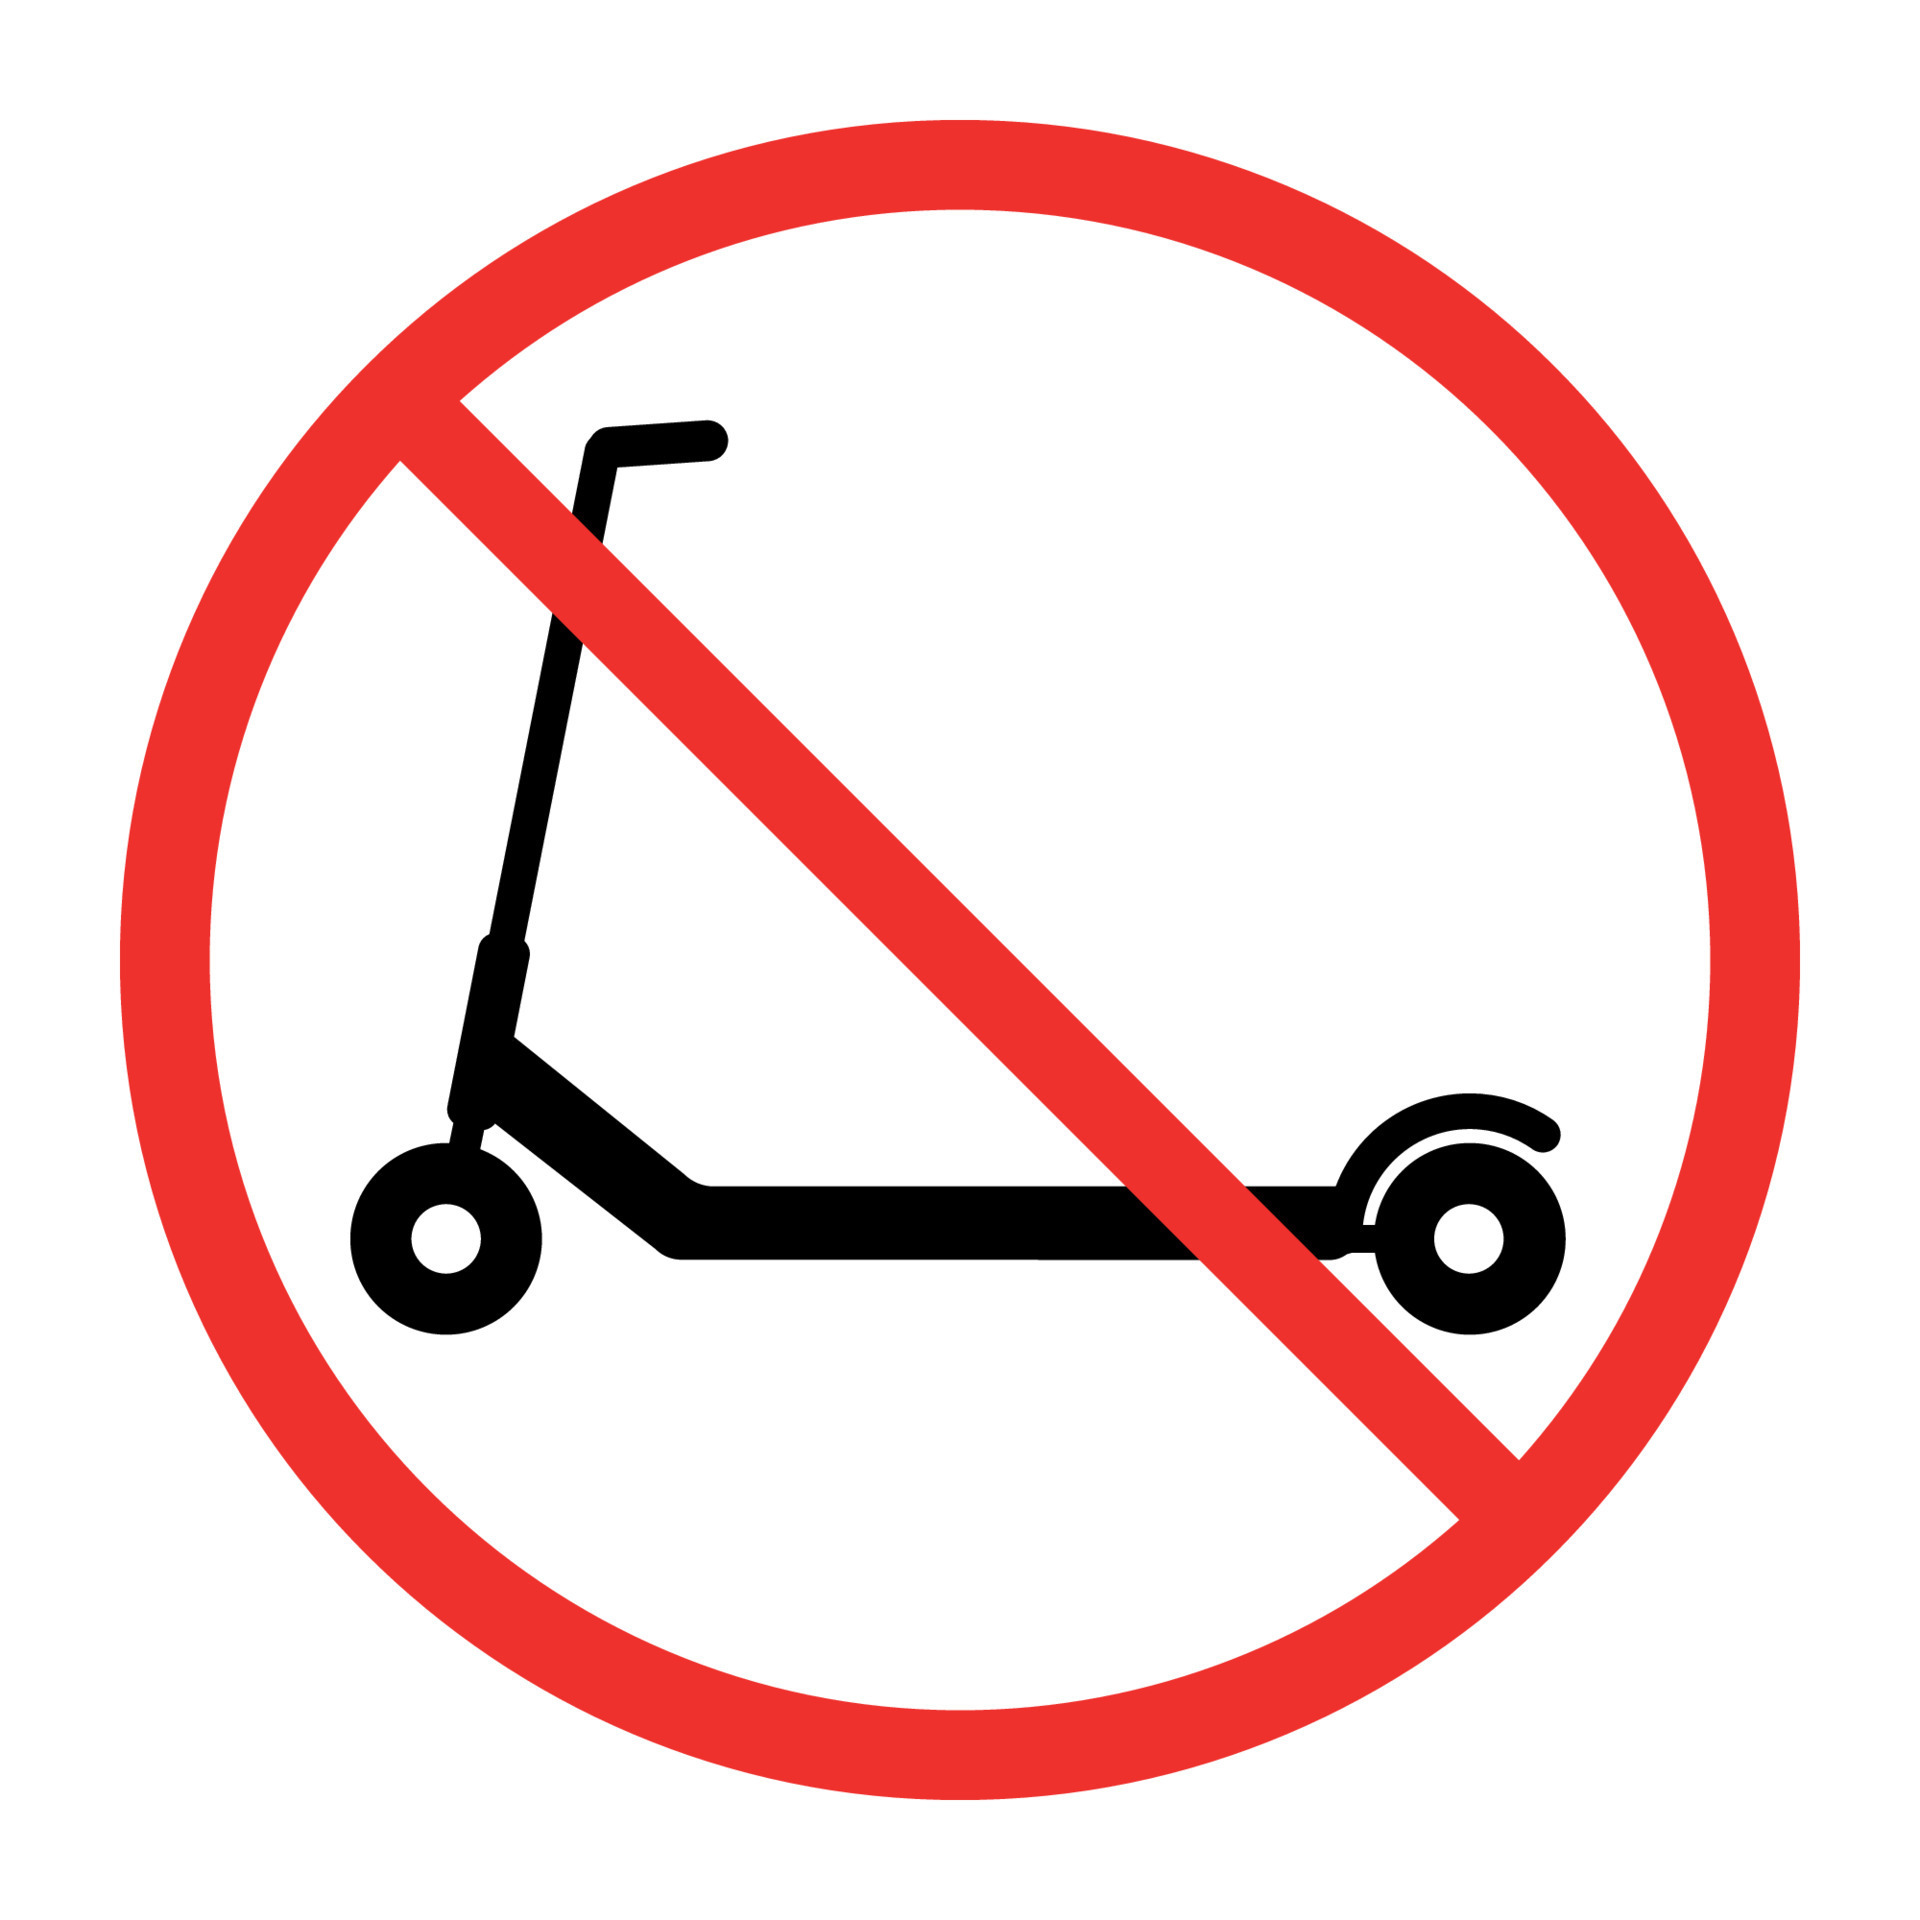 segno movimento scooter vietato in rosso barrato cerchio 7504974 Arte  vettoriale a Vecteezy